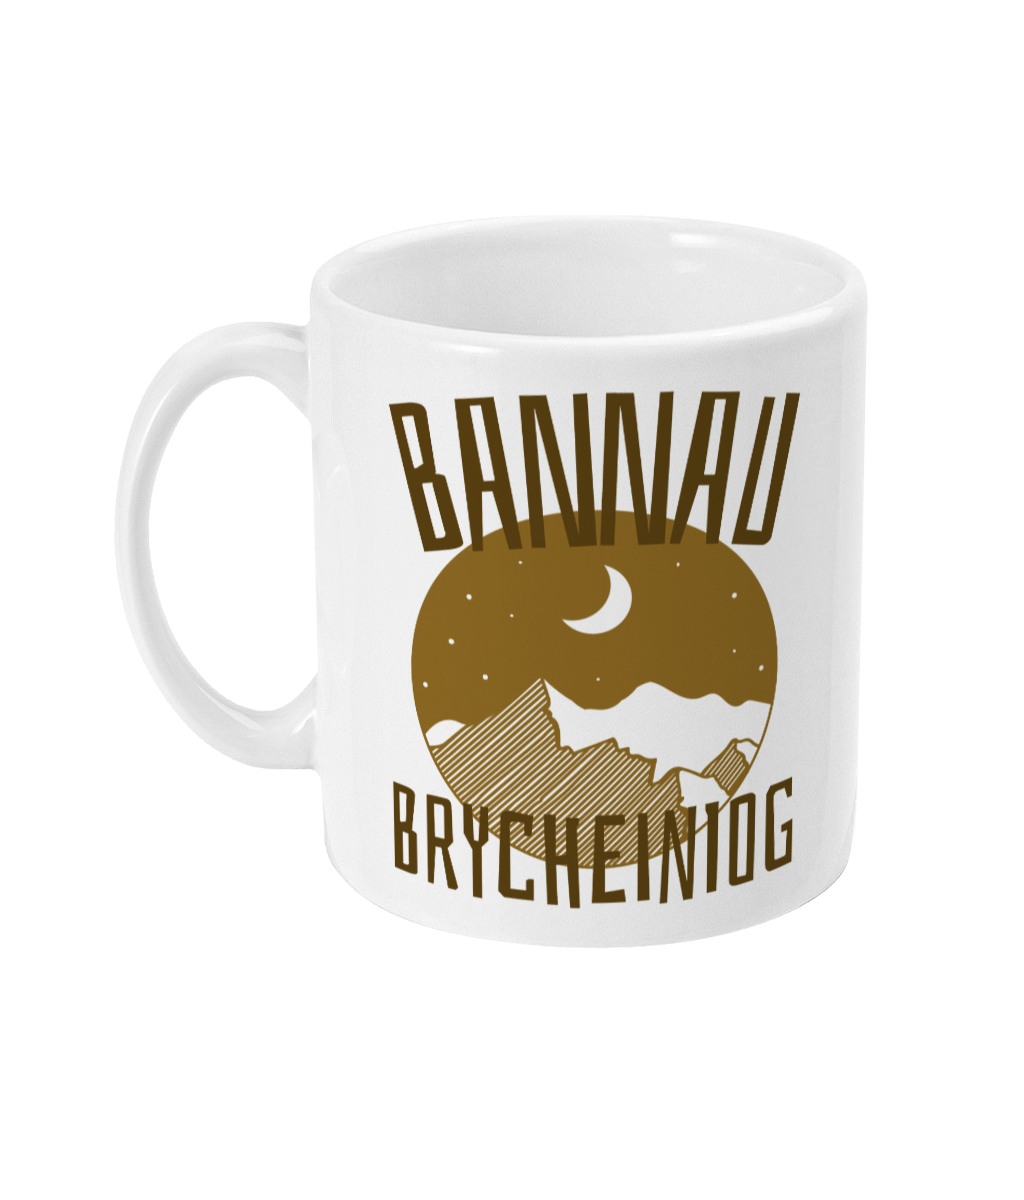 Bannau Brycheiniog - Mwg